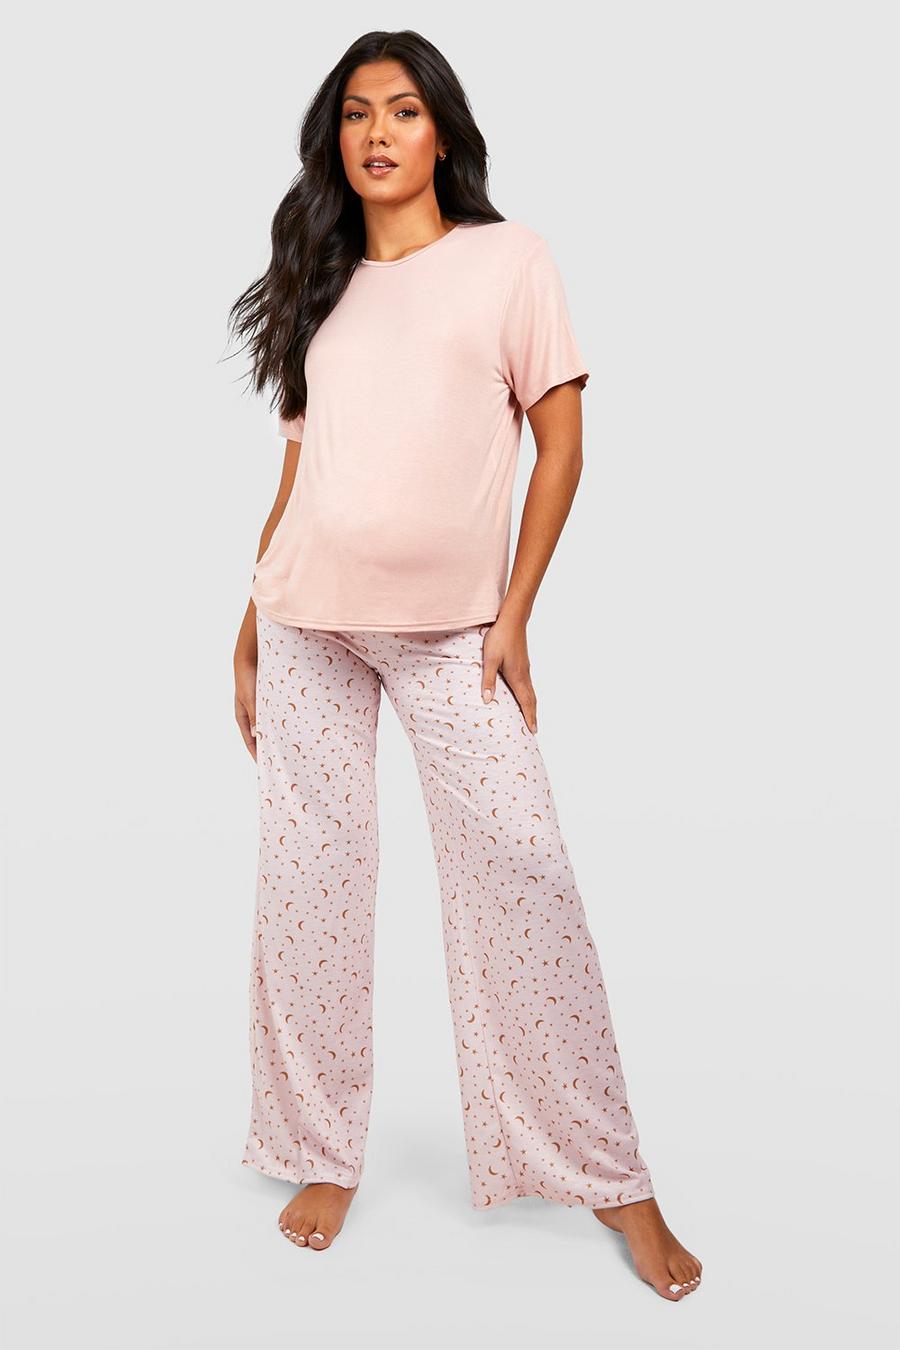 Blush Zwangerschap Sterrenprint Pyjama Set